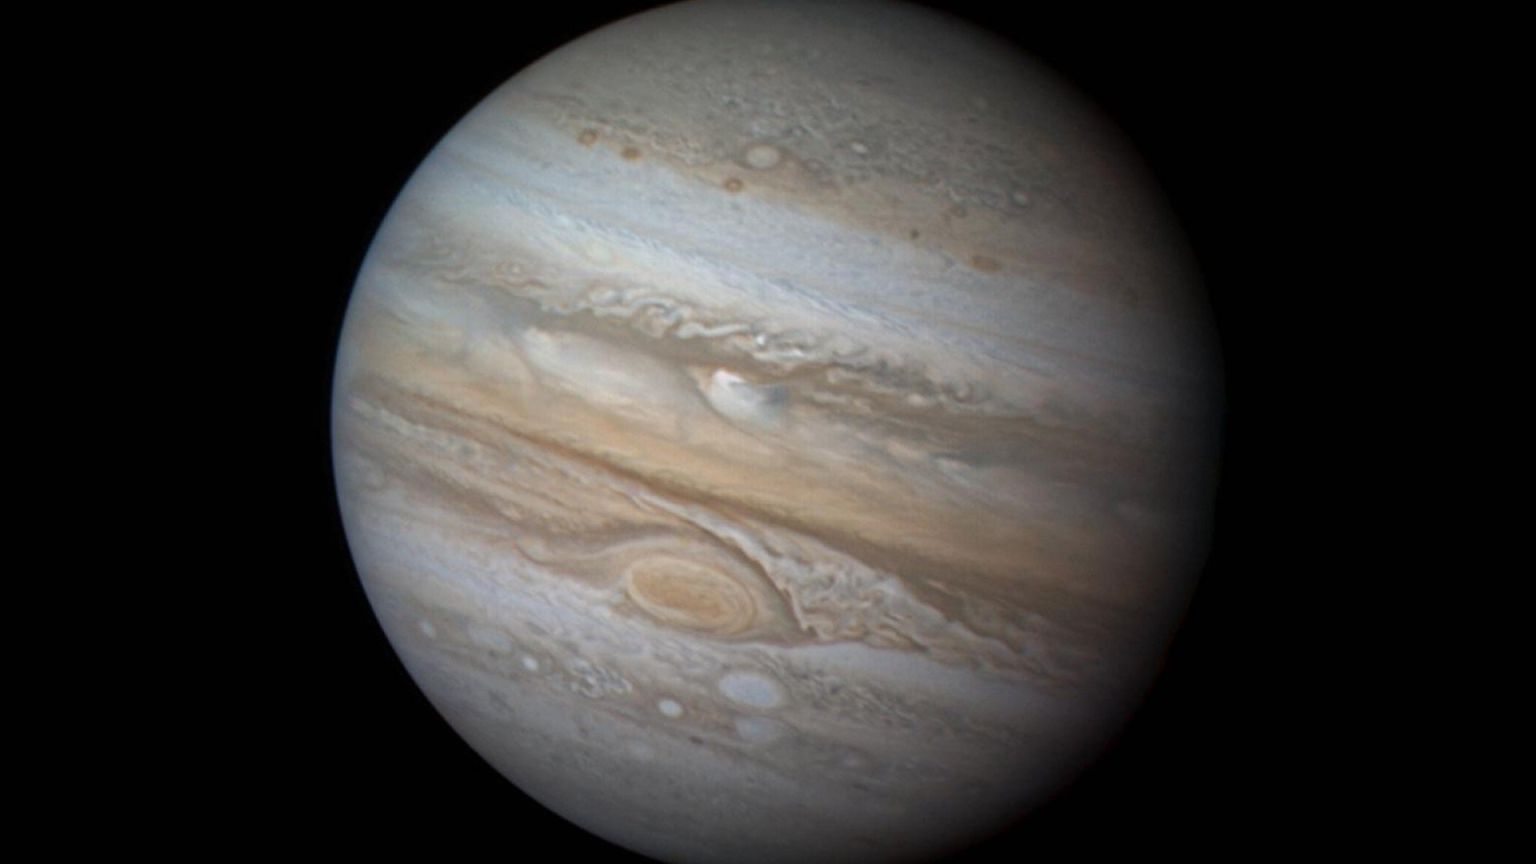 Планеты Юпитер и Сатурн